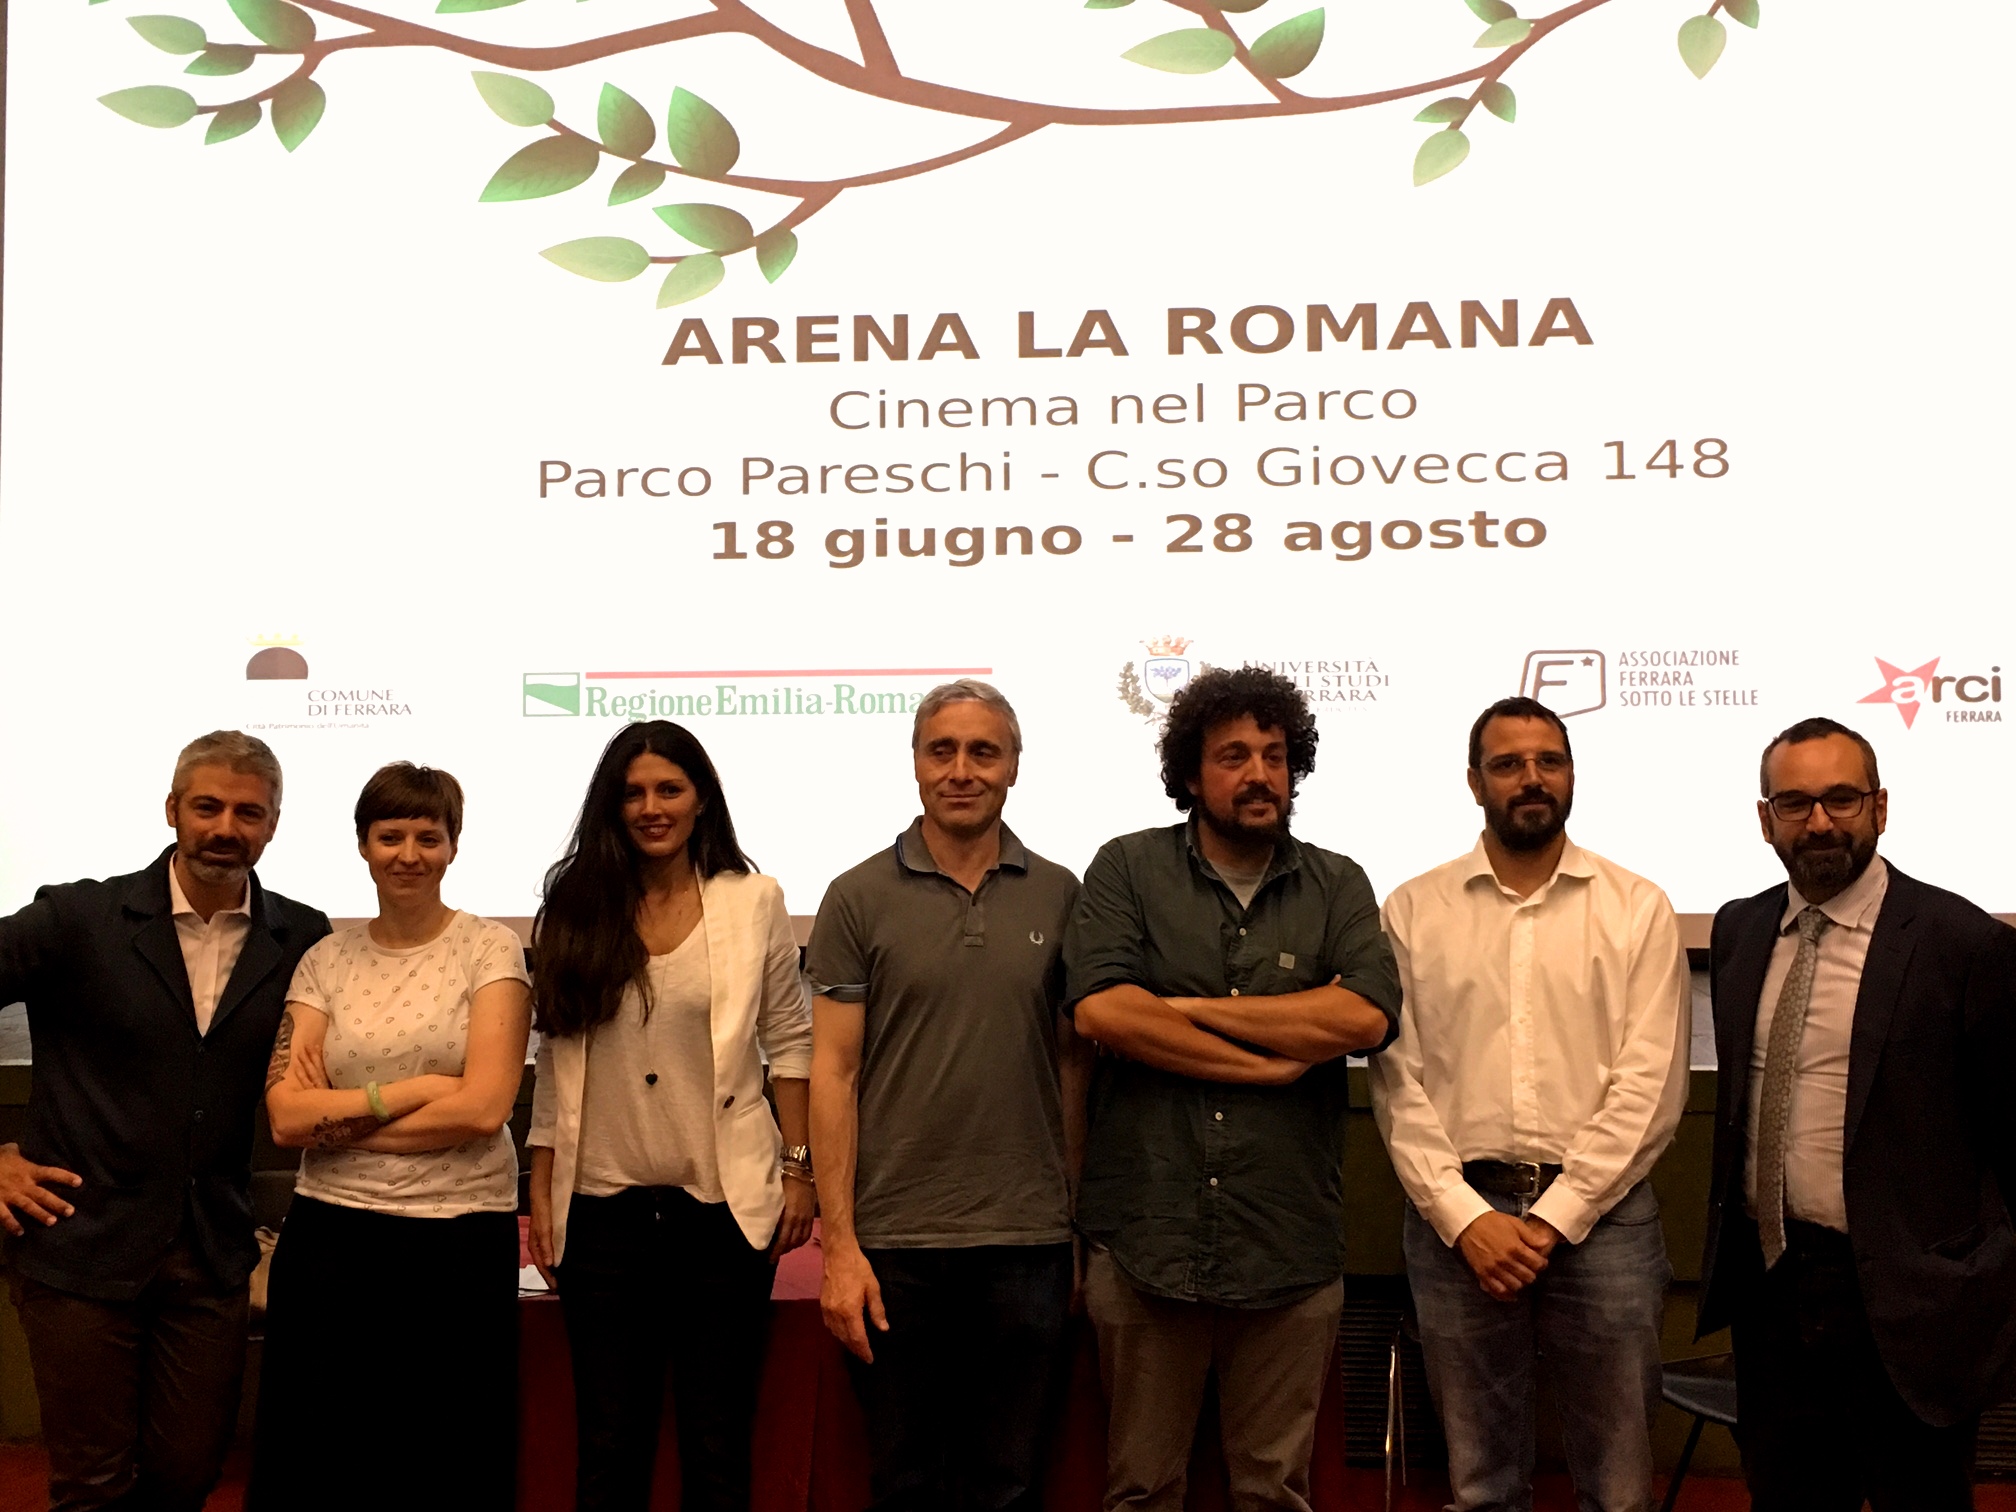 Torna a Ferrara l’Arena La Romana: un’estate all’insegna del cinema all’aperto, anche grazie al contributo del mondo cooperativo